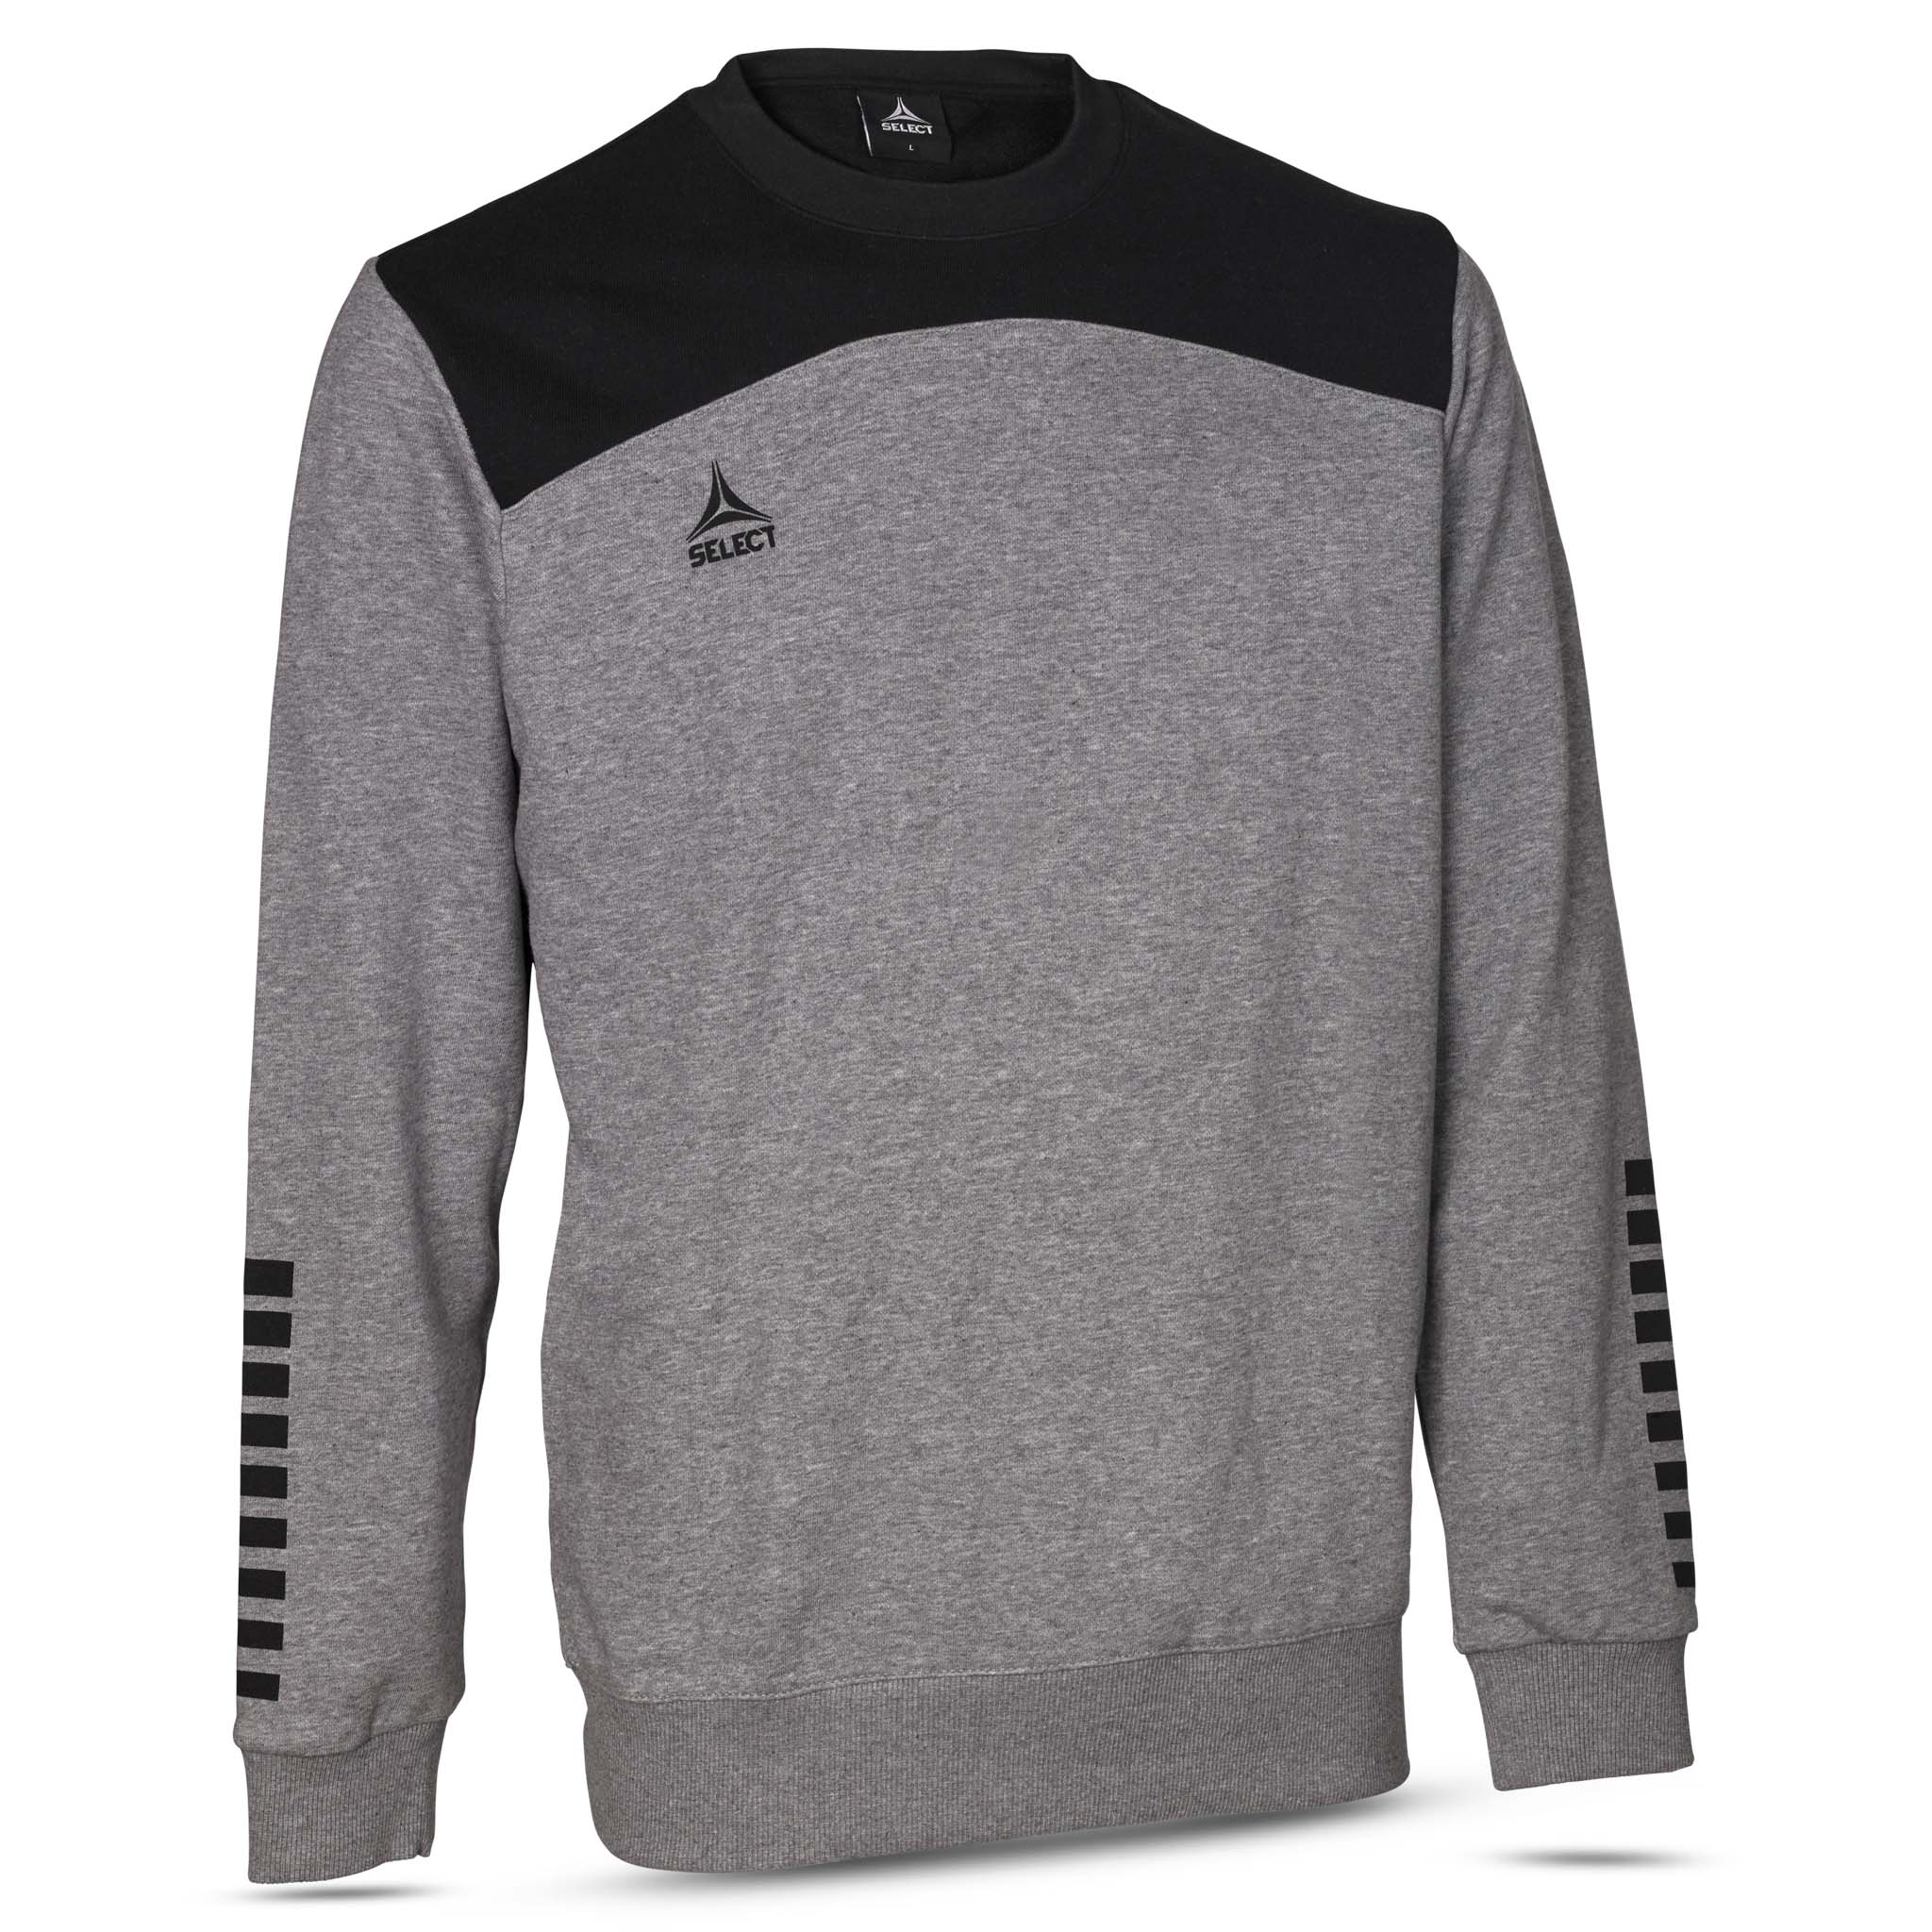 Oxford Sweatshirt - Barn #färg_grå/svart